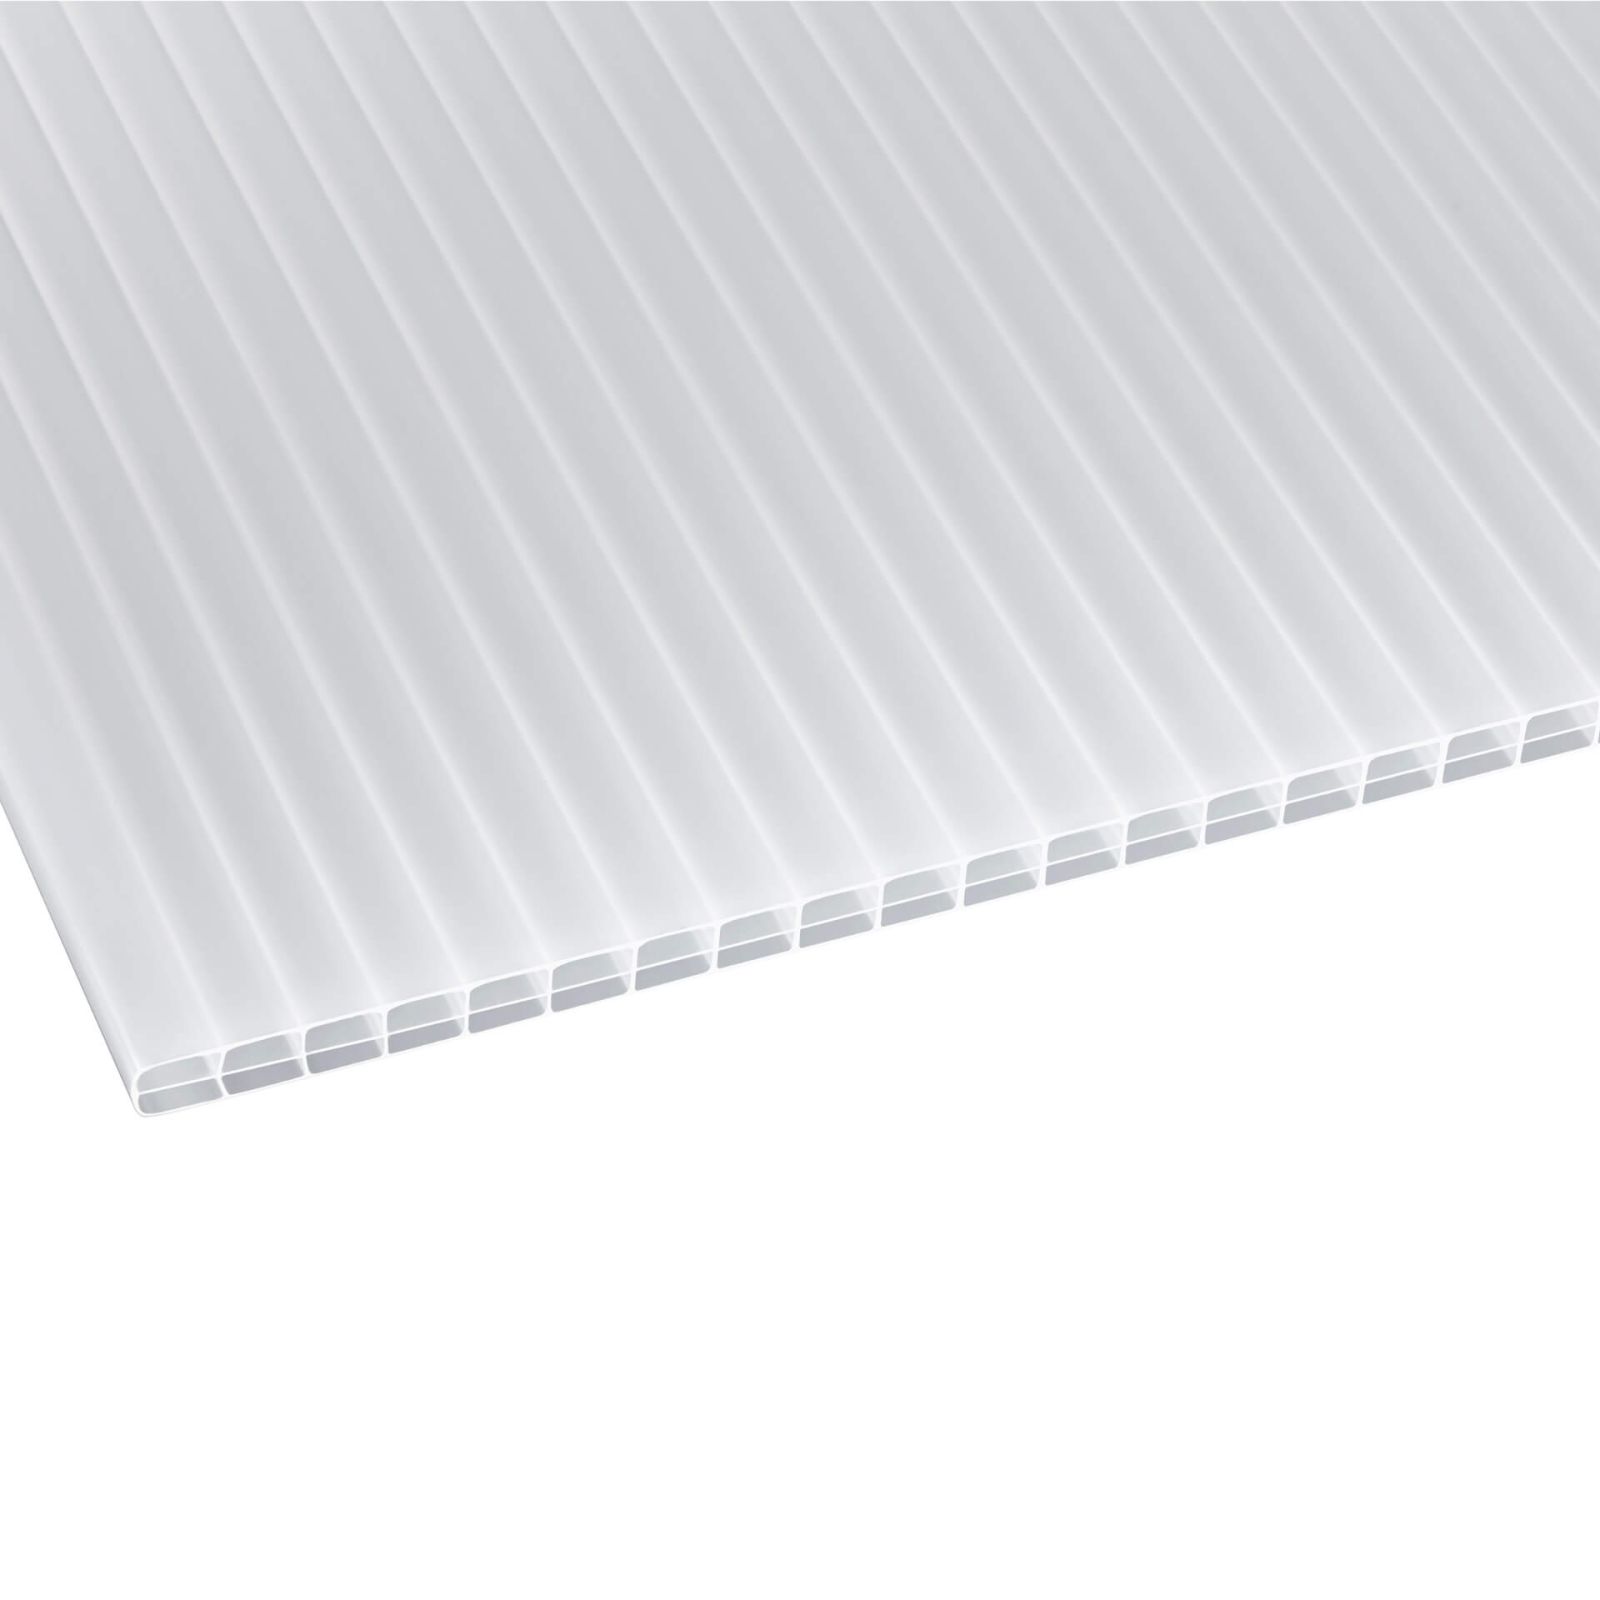 Polycarbonat Stegplatte | 16 mm | Profil A1 | Sparpaket | Plattenbreite 980 mm | Opal Weiß | Blueline | Breite 3,08 m | Länge 2,00 m #3